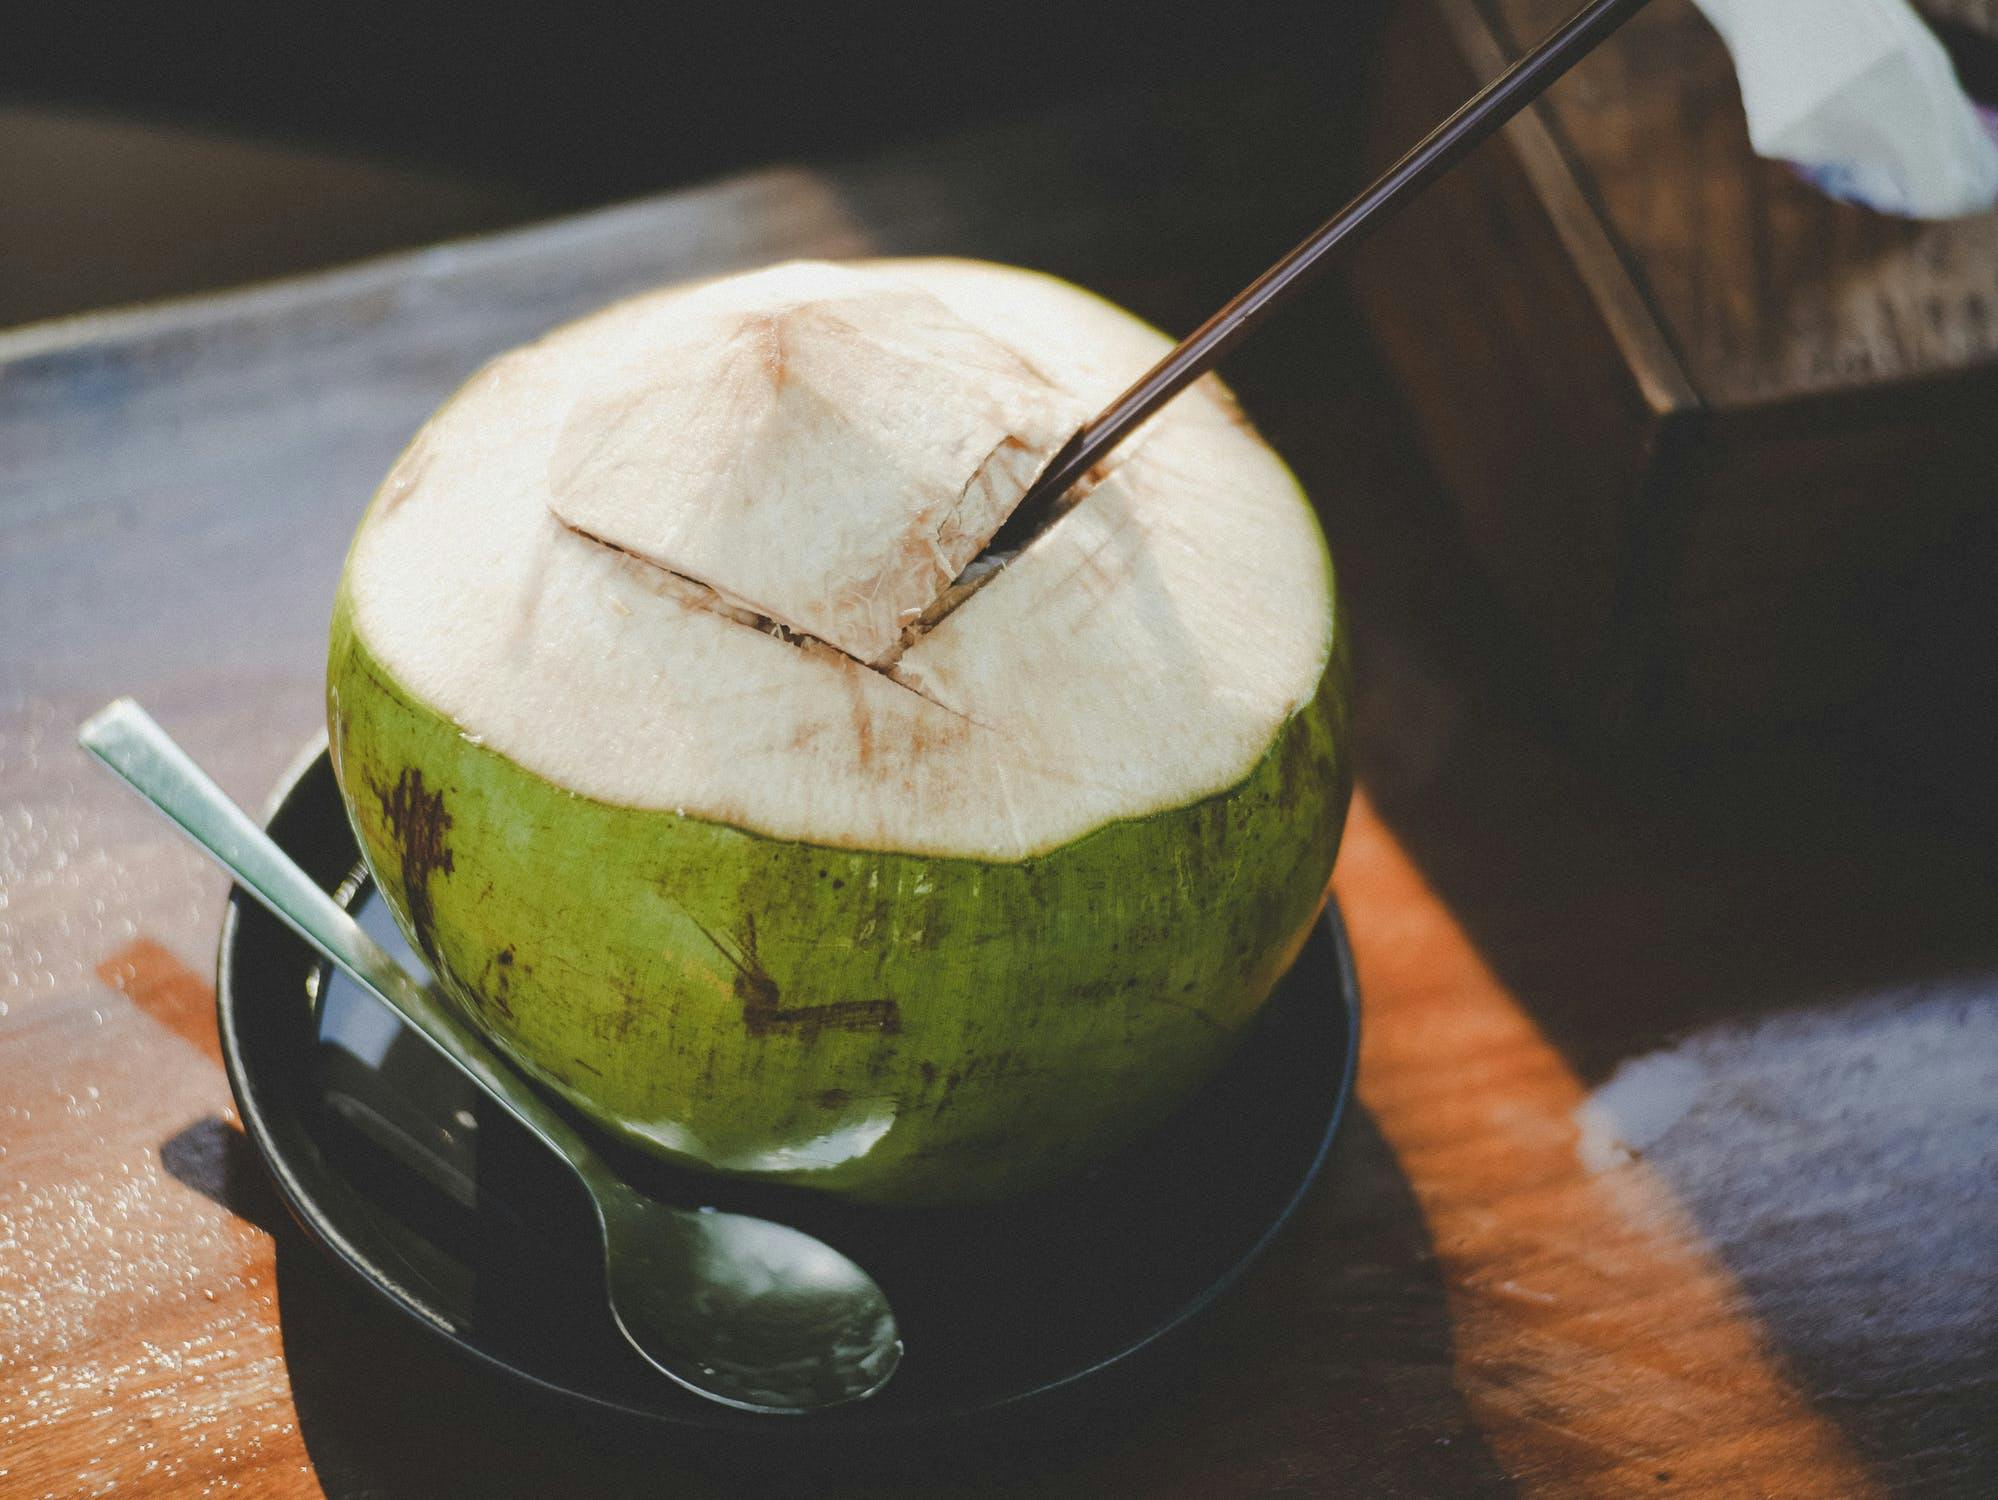 Propriétés et bienfaits de l'huile de noix de coco : le nouvel